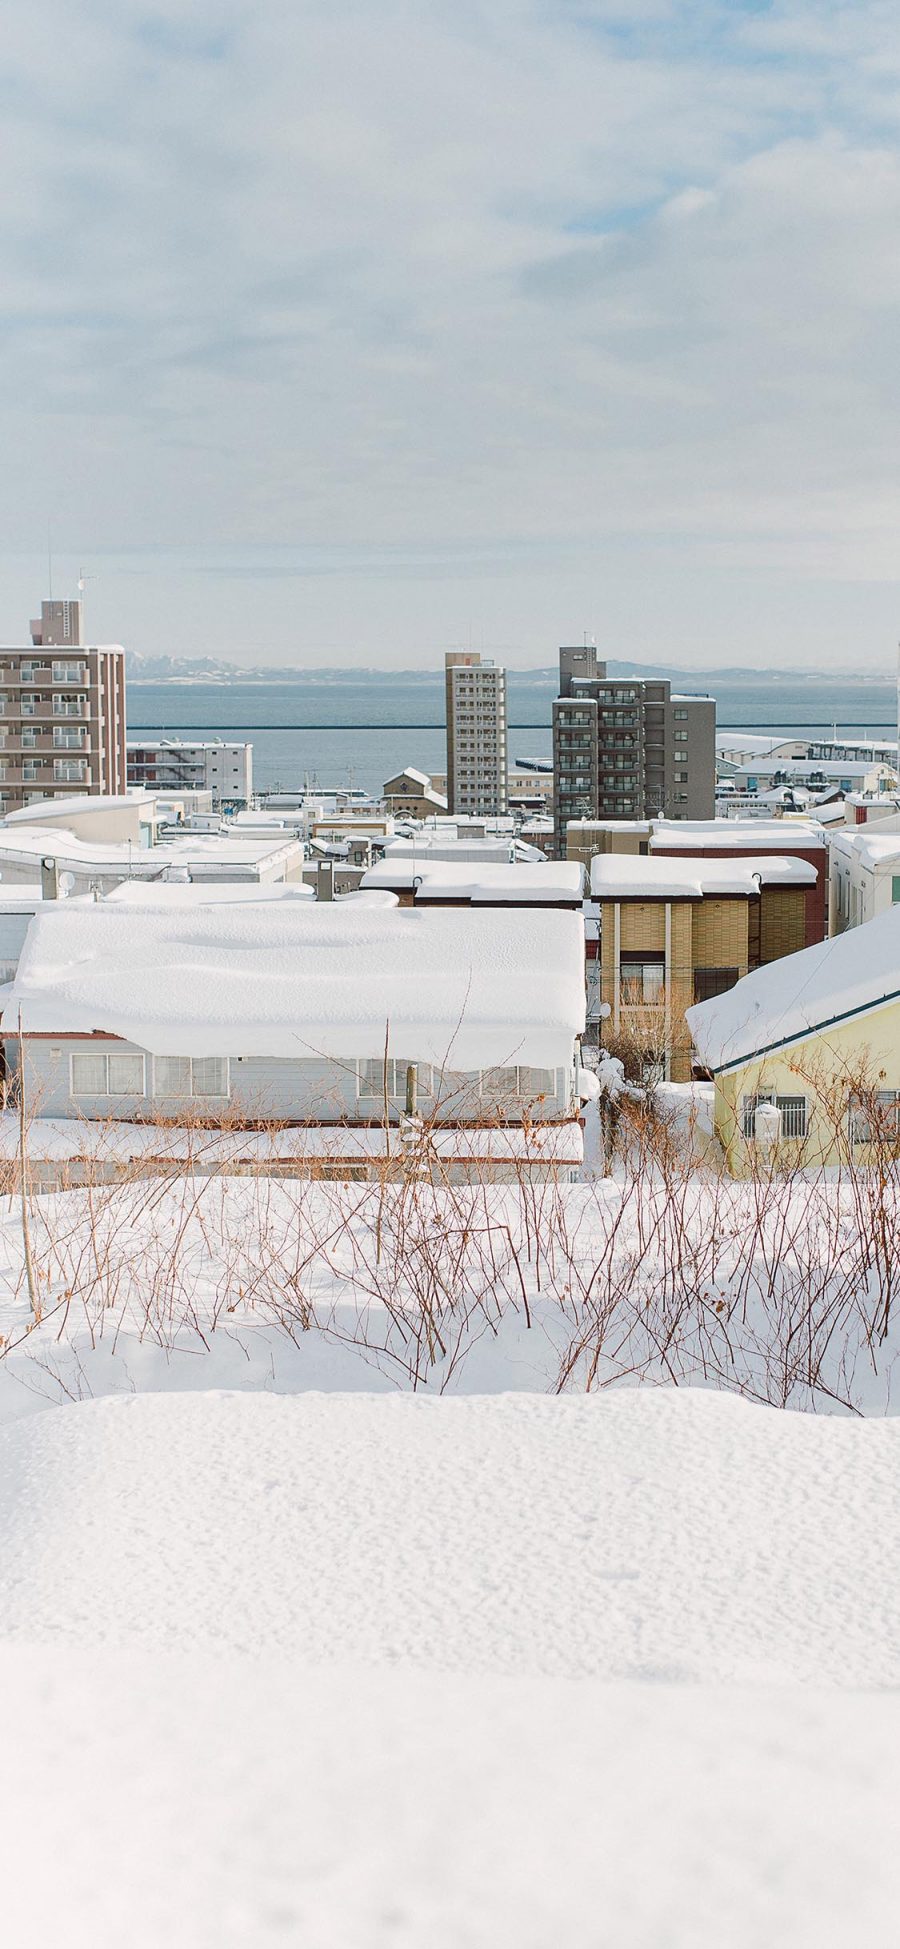 2436 1125 日本北海道冬季雪景苹果手机壁纸图片 全面屏手机壁纸